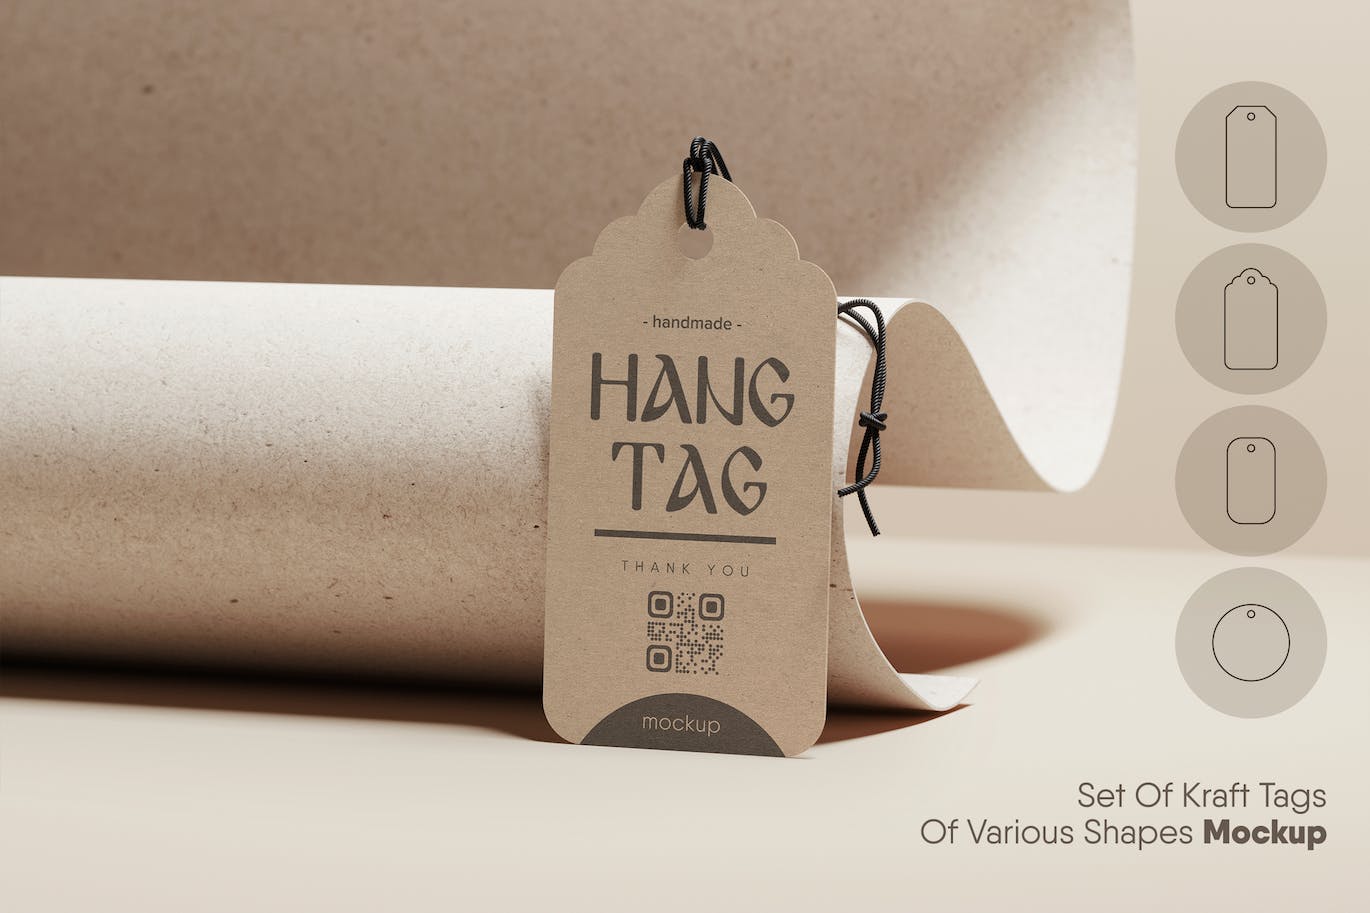 各种形状的牛皮纸价格品牌标签设计样机集 Set Of Kraft Tags Of Various Shapes Mockup 样机素材 第2张